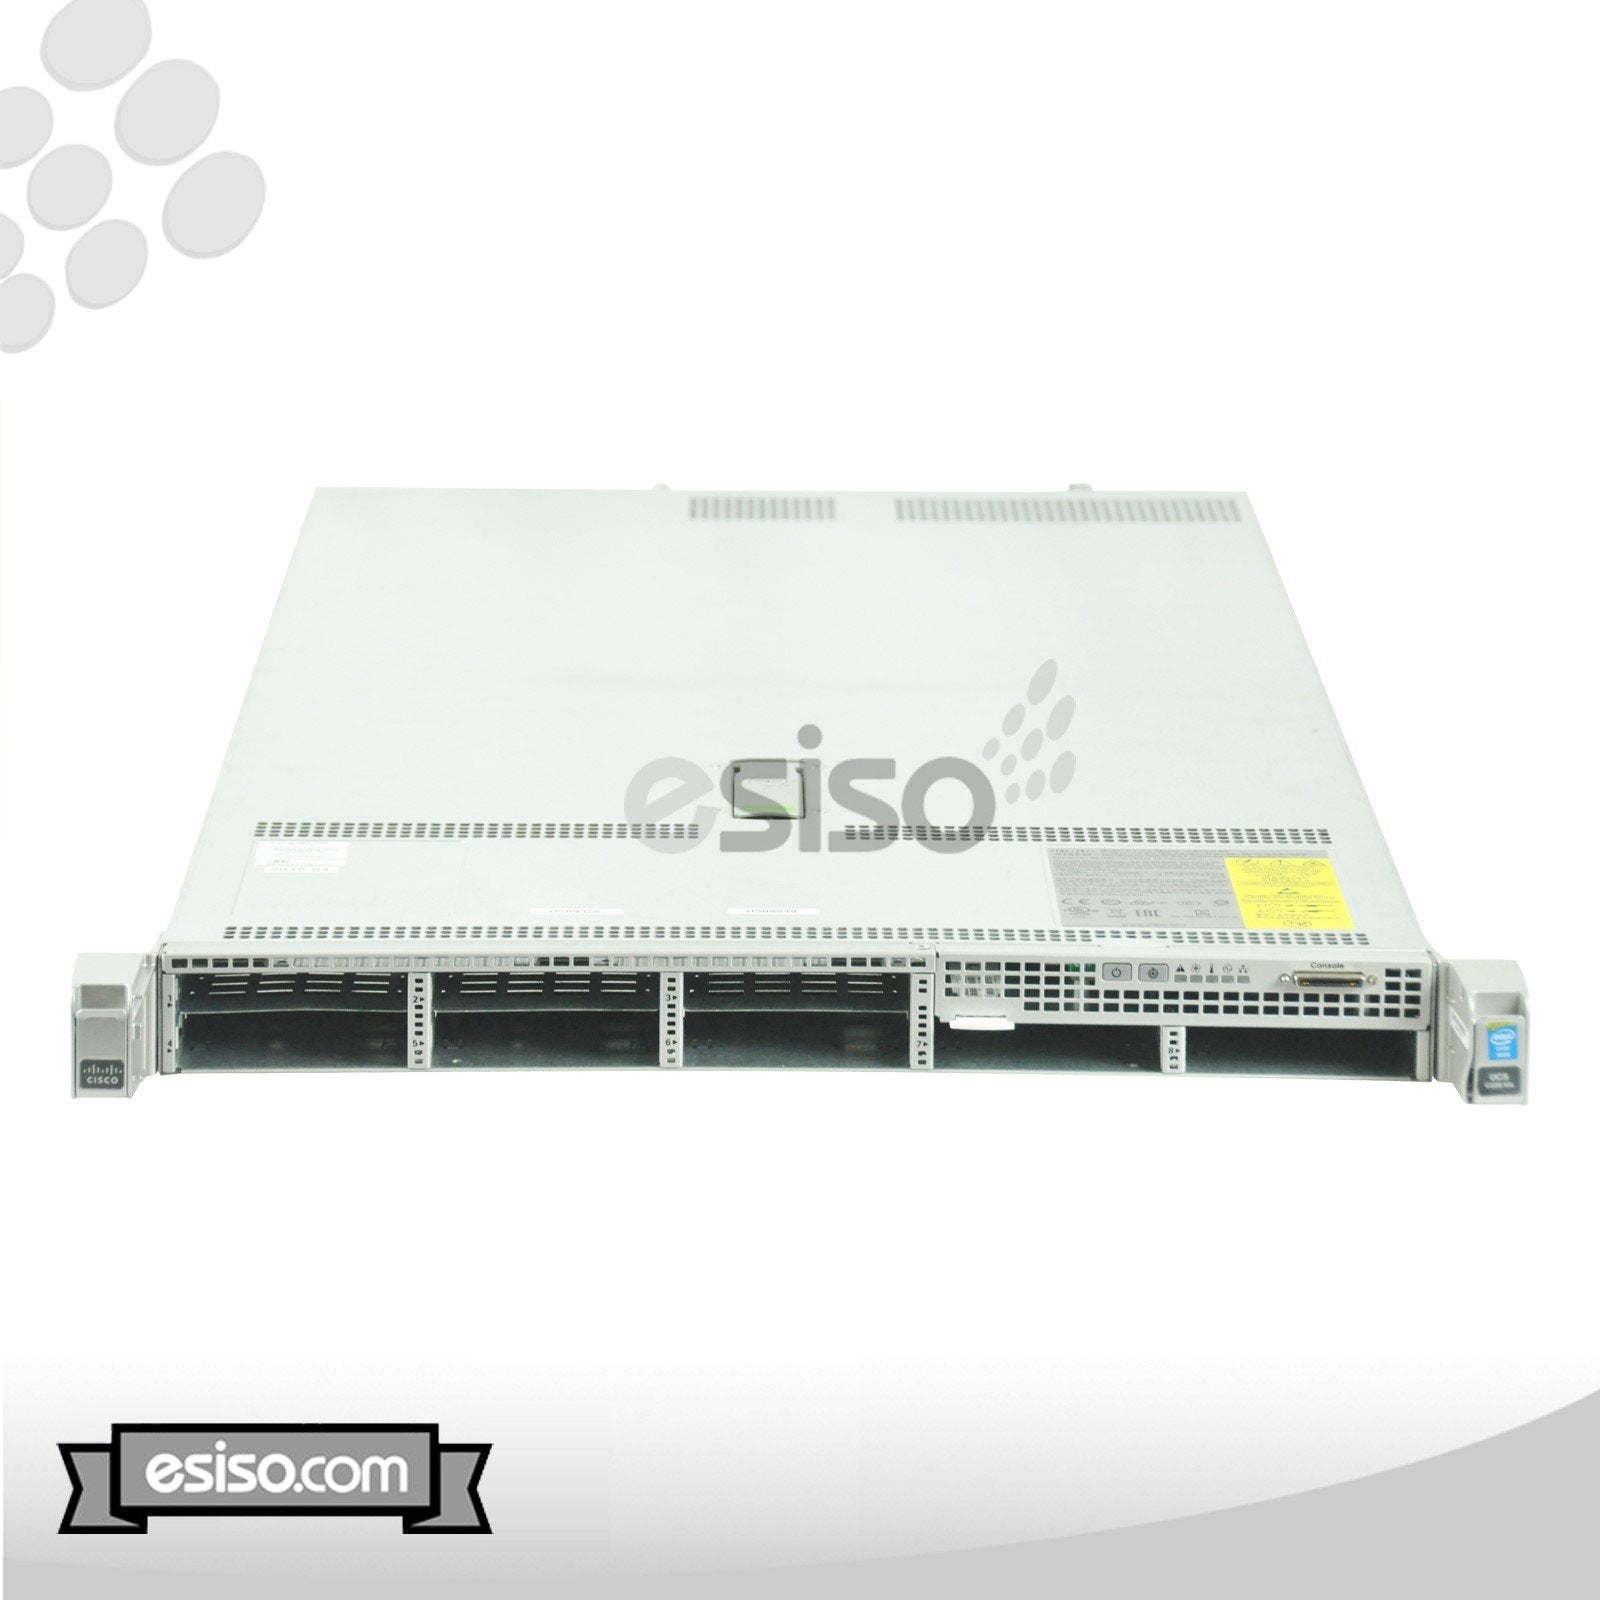 CISCO UCS C220 M4 8SFF 2x 8 CORE E5-2630v3 2.4GHz 128GB RAM 4x300GB 10K SAS